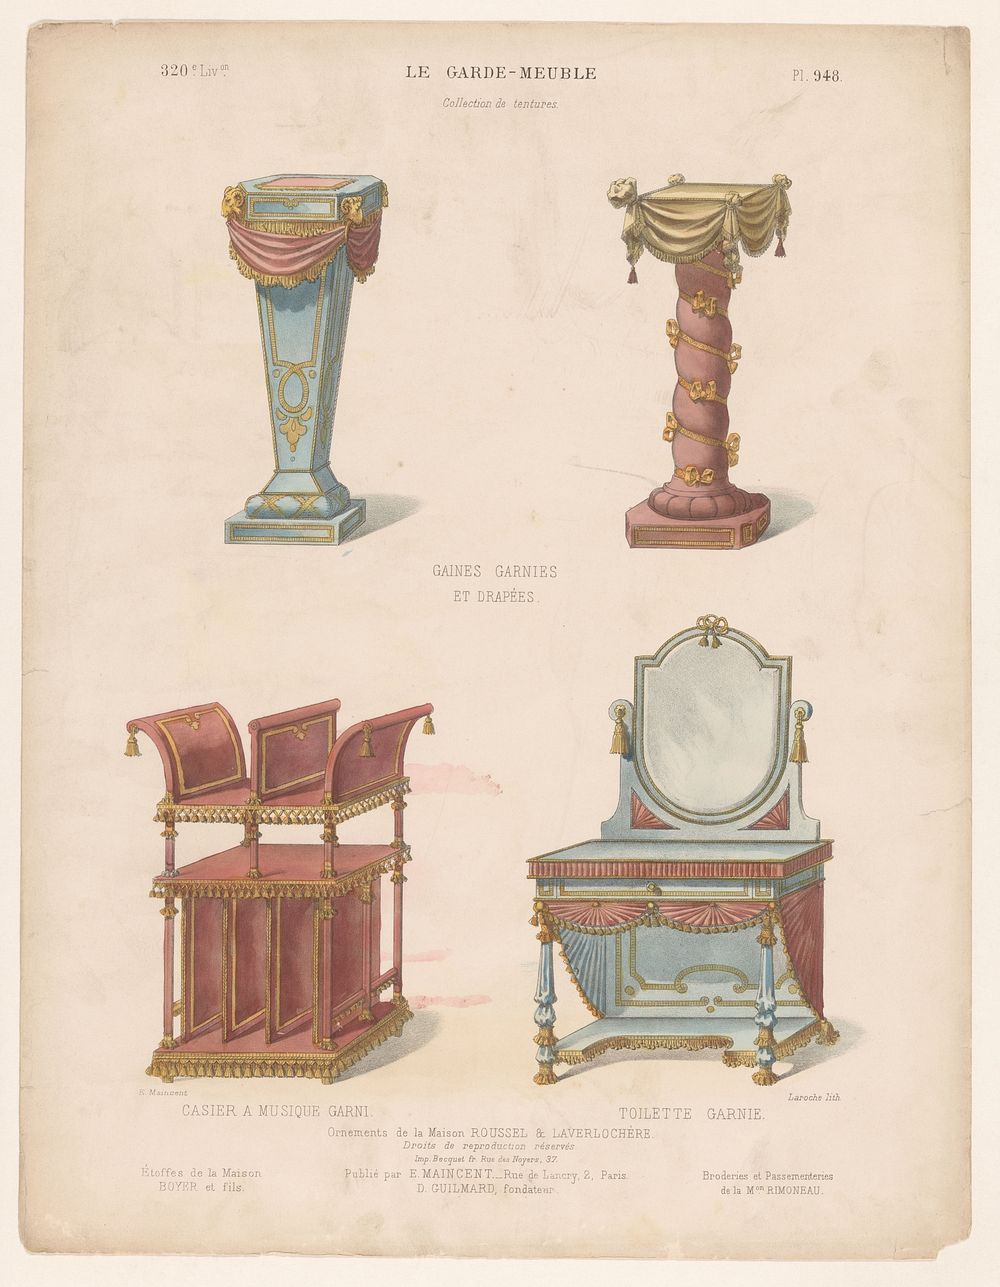 Interieurobjecten met decoraties en draperieën (c. 1885 - c. 1895) by Léon Laroche, Eugène Maincent, Becquet and Eugène…